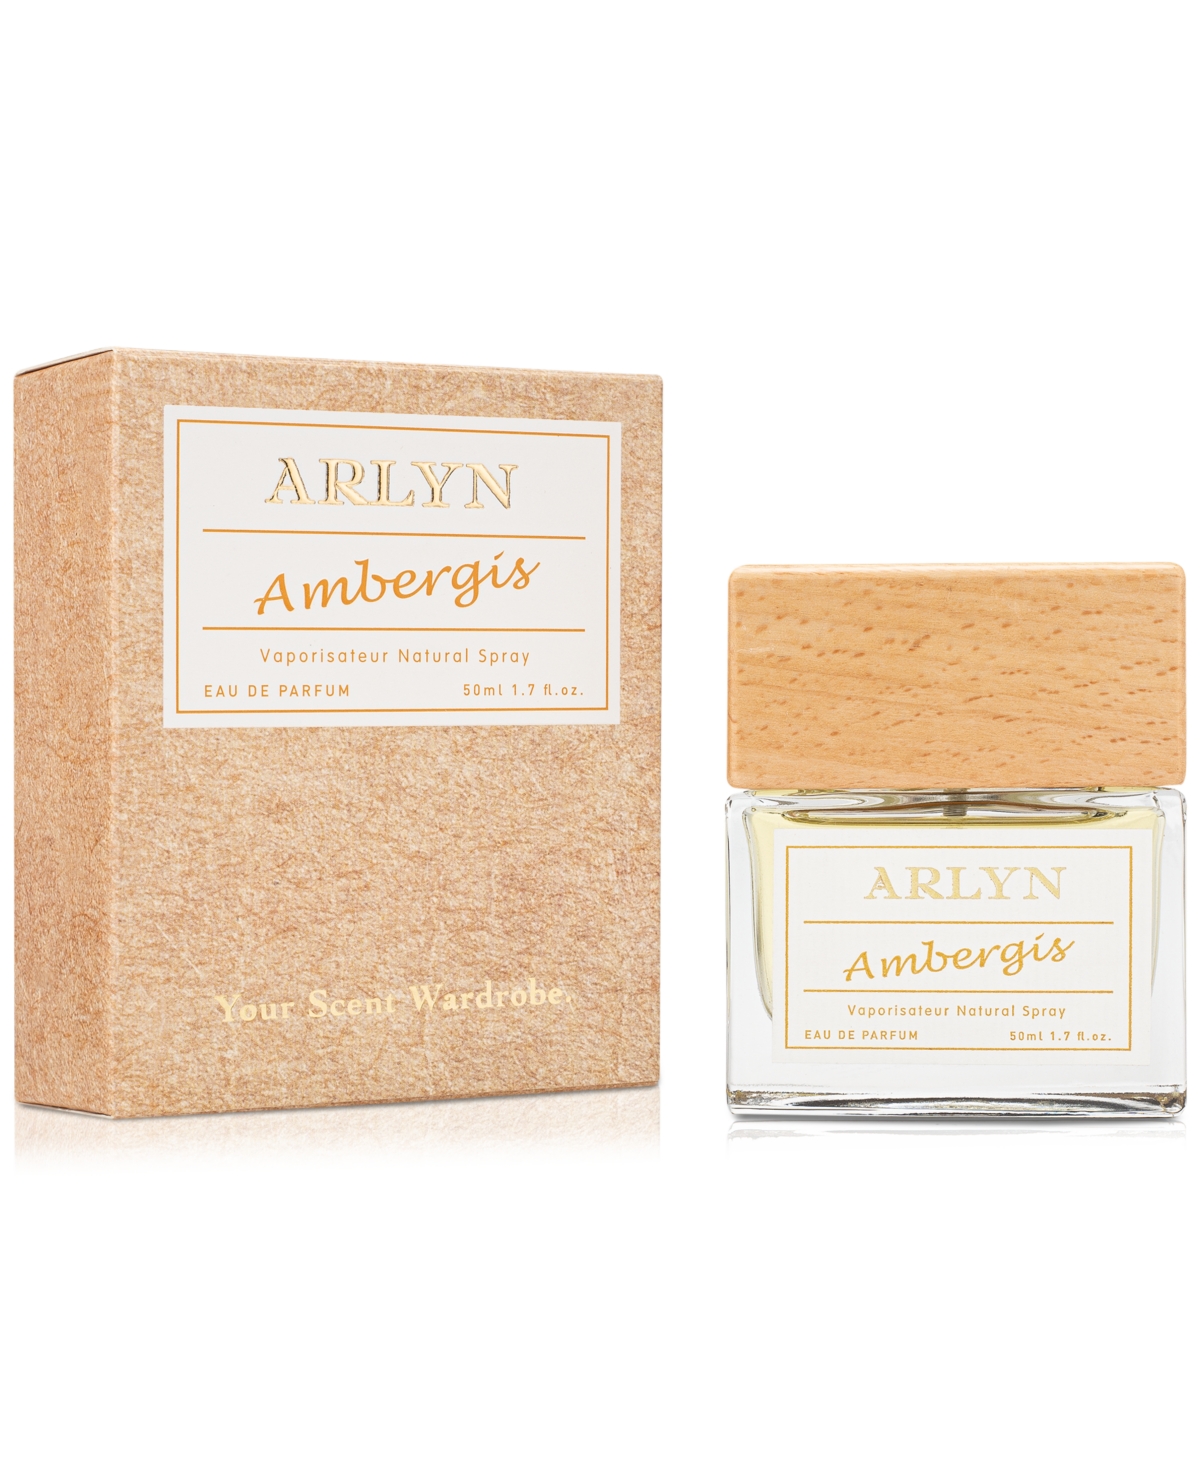 Ambergis Unisex Eau de Parfum, 1.7 oz.